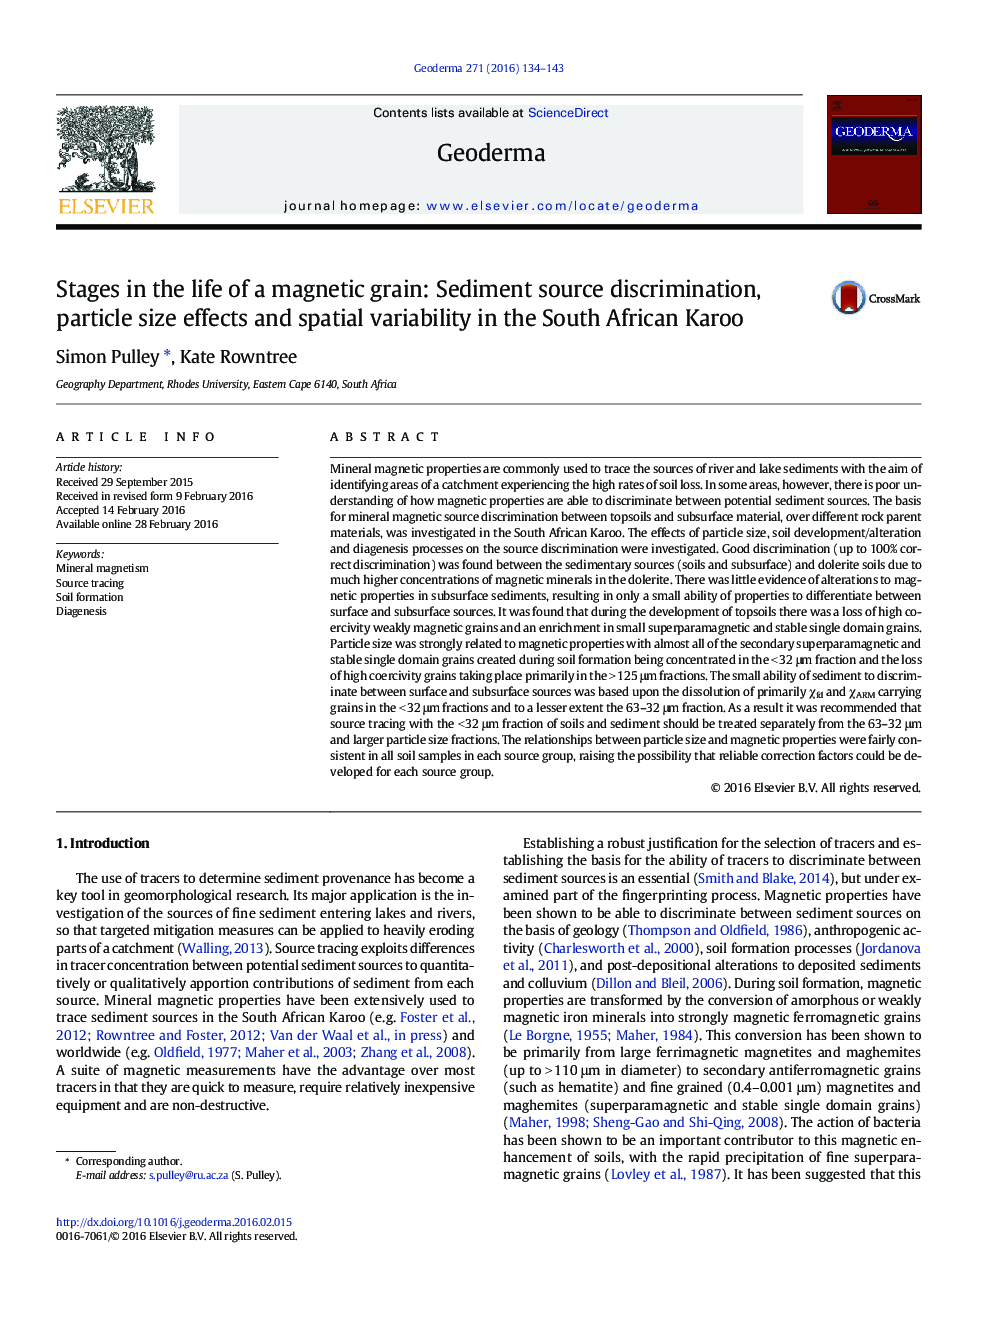 مراحل زندگی یک دانه مغناطیسی: تبعیض منبع رسوب، اثرات اندازه ذرات و تنوع فضایی در کارو آفریقای جنوبی 